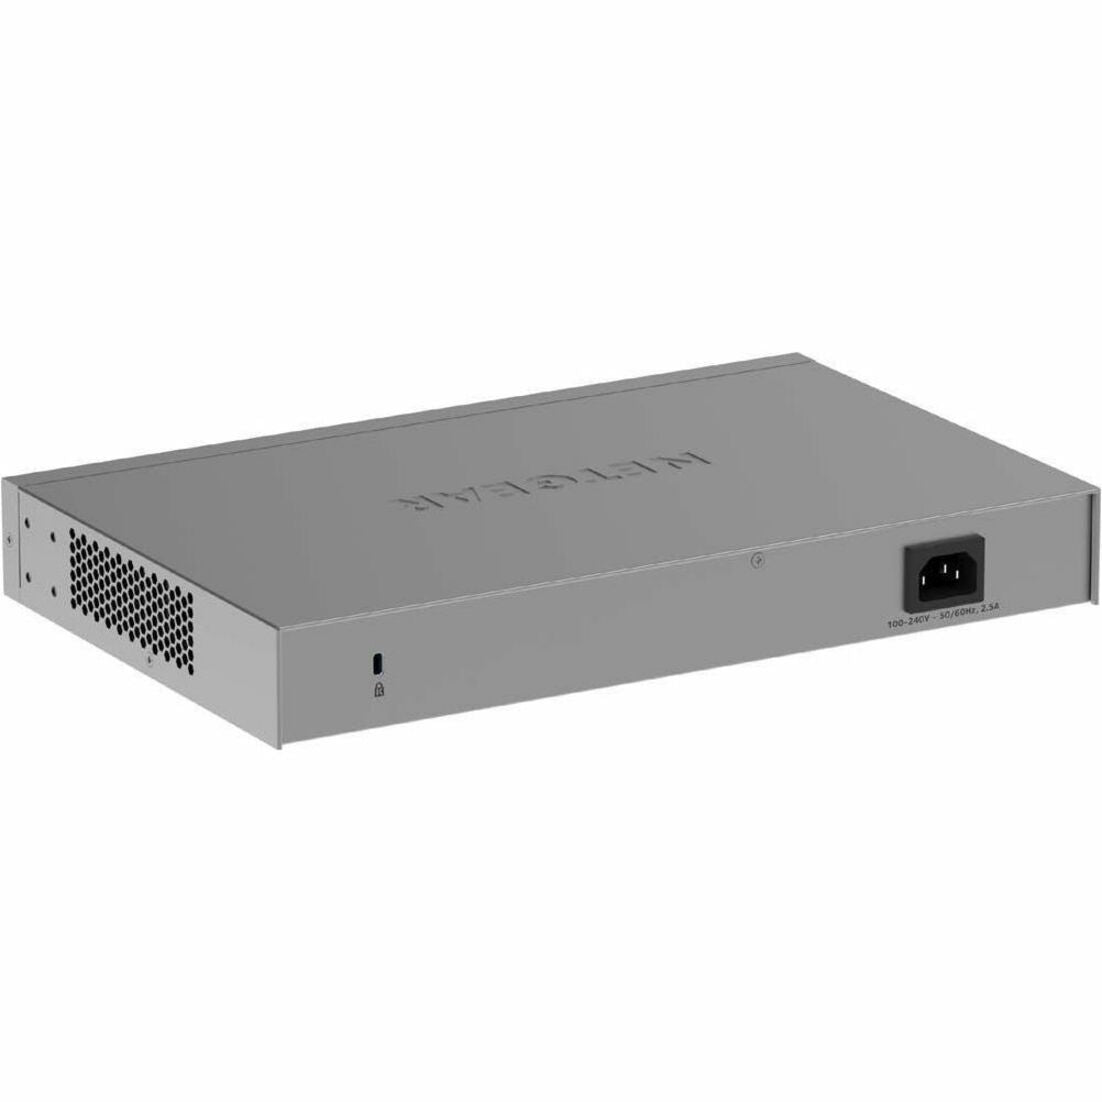 Netgear - commutateur Ethernet Smart S3600 XS516TM-100NAS 16 ports Ethernet Gigabit 2 emplacements d'extension Ethernet 10 Gigabit